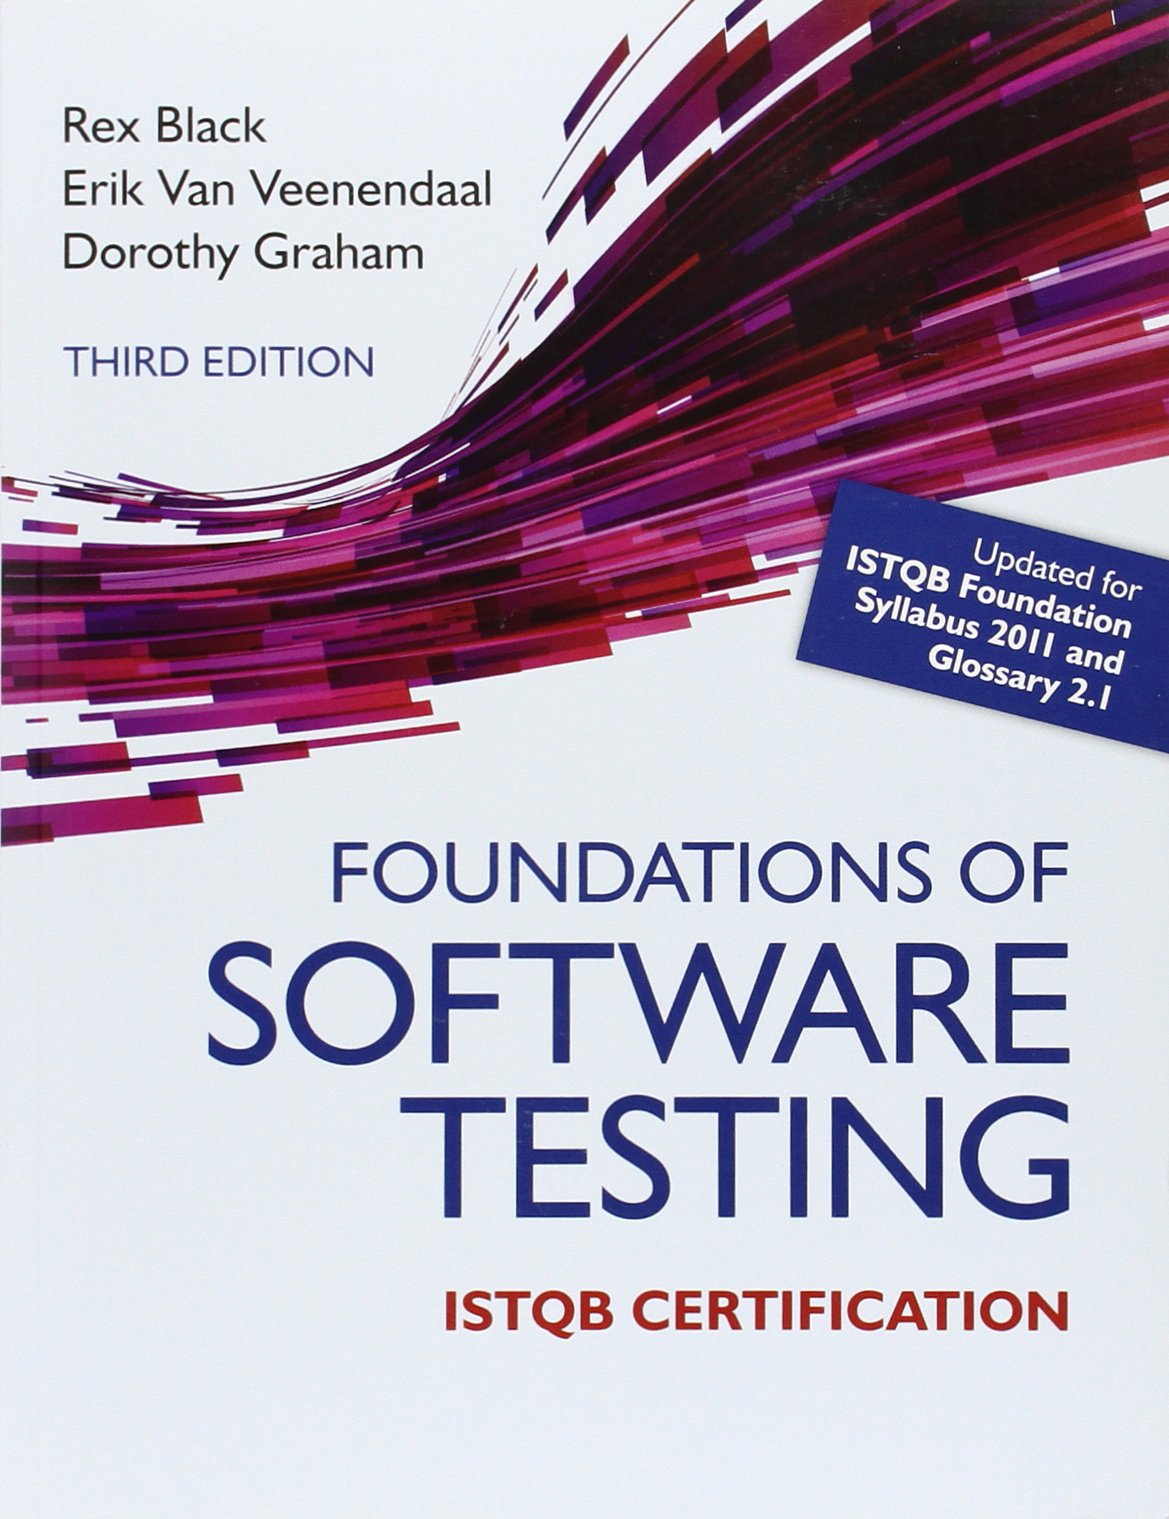 软件测试ISTQB认证的基础